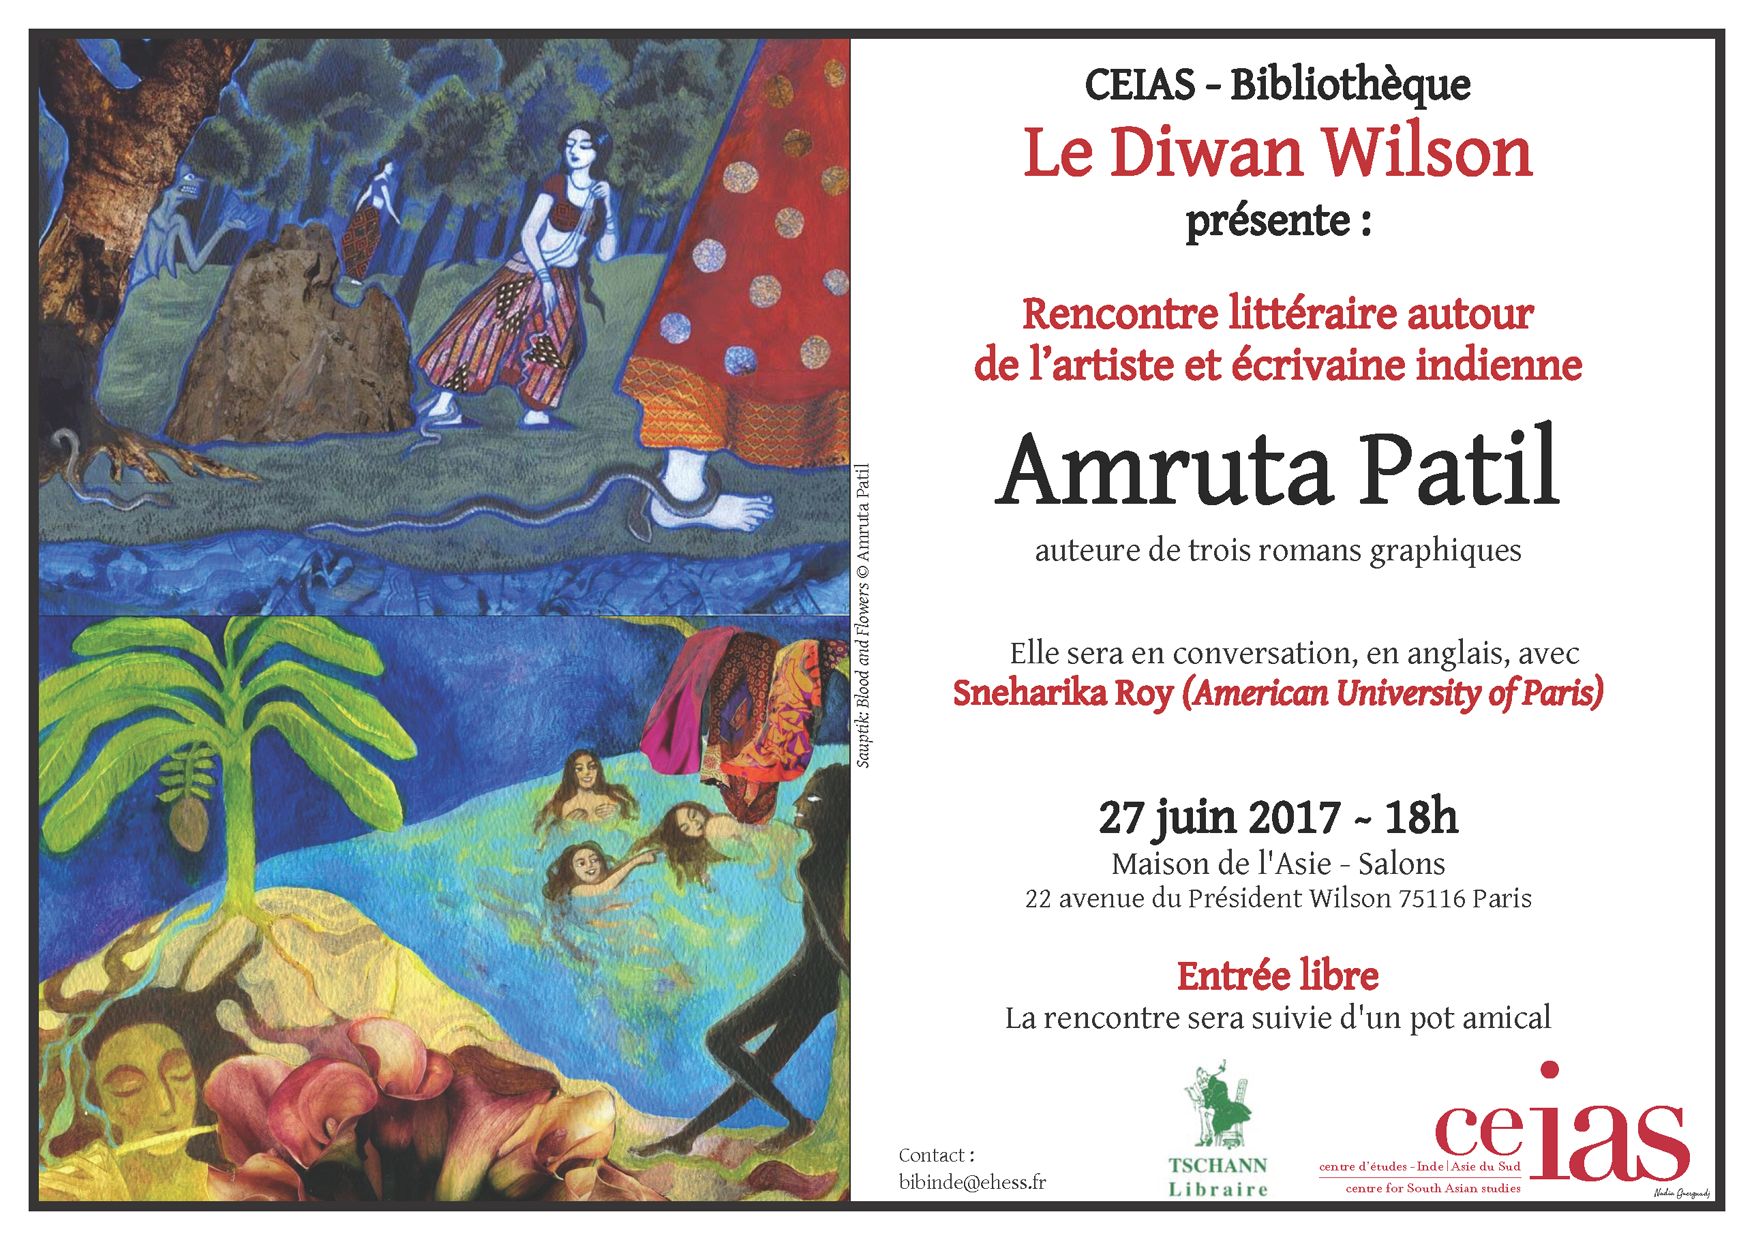 Rencontre littéraire autour d'Amruta Patil